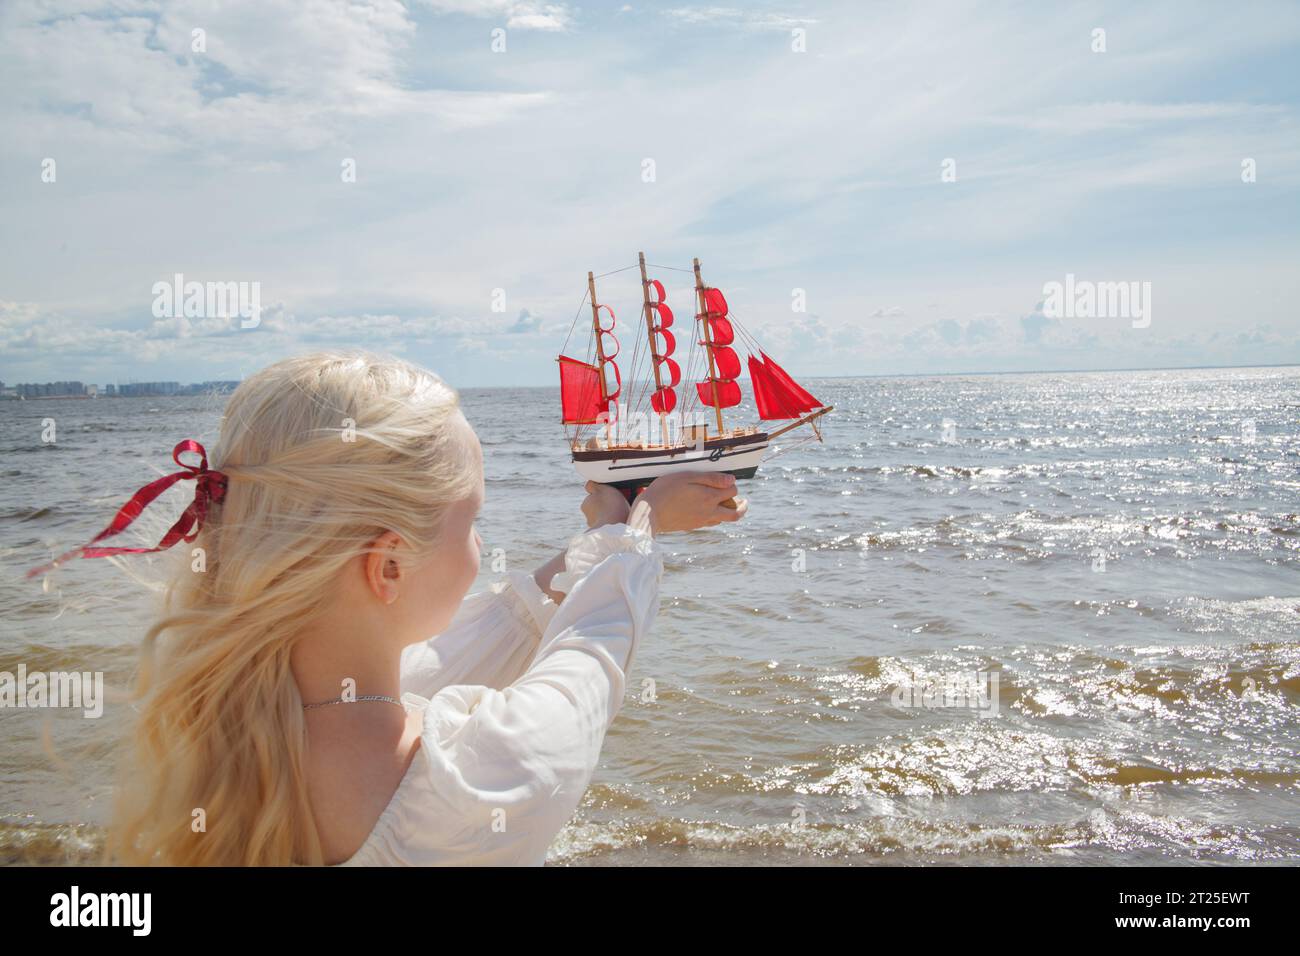 Giovane donna di bellezza che regge una barca a vela rossa contro il mare e il cielo. Concetto di vacanza romantica Foto Stock